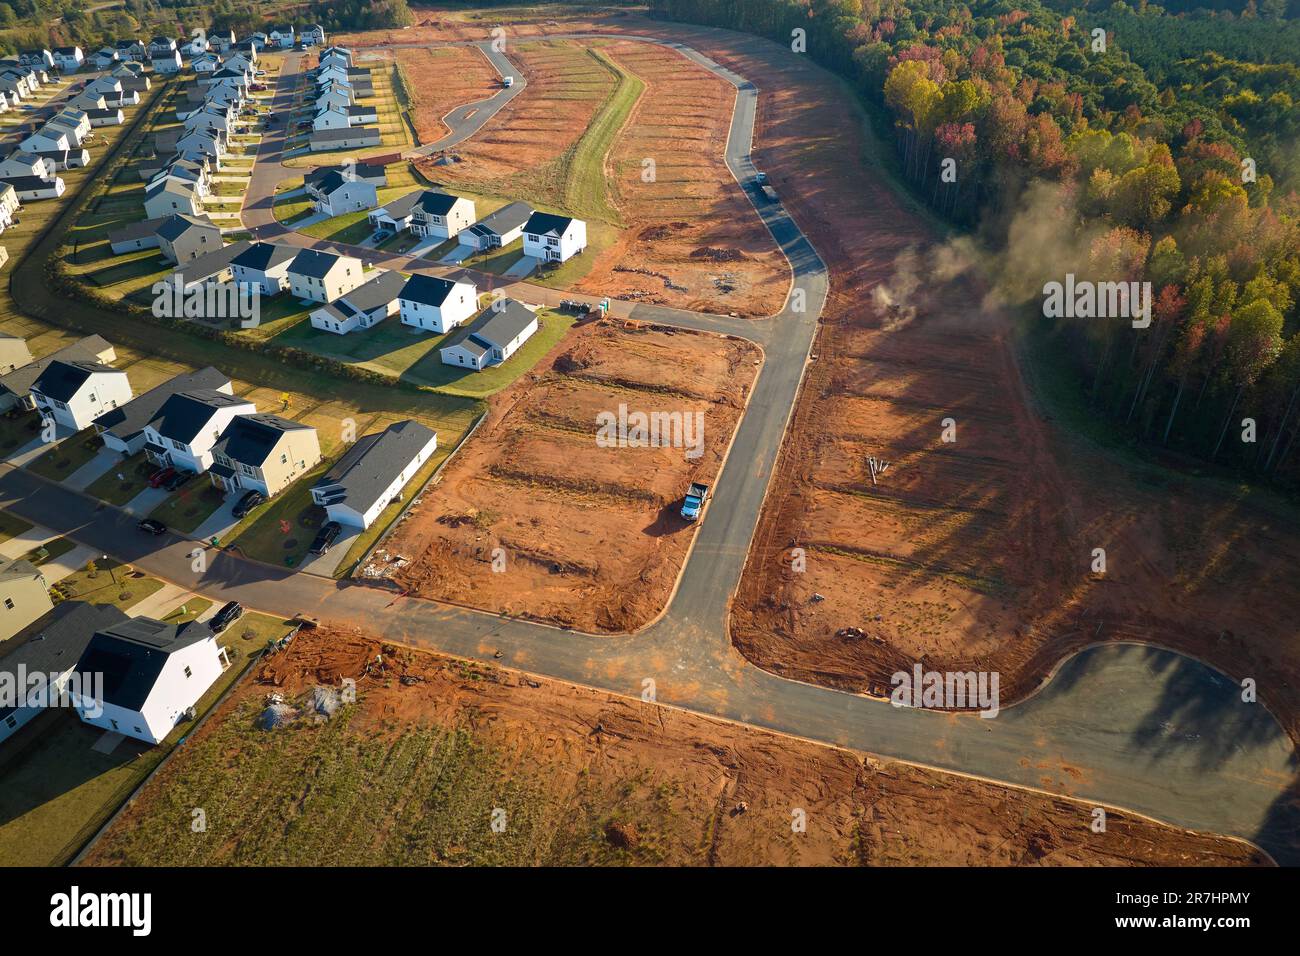 Immobilienentwicklung mit dicht gelegenen Familienhäusern, die im Vorstadtbereich von South Carolina gebaut werden. Konzept wachsender amerikanischer Vororte. Stockfoto